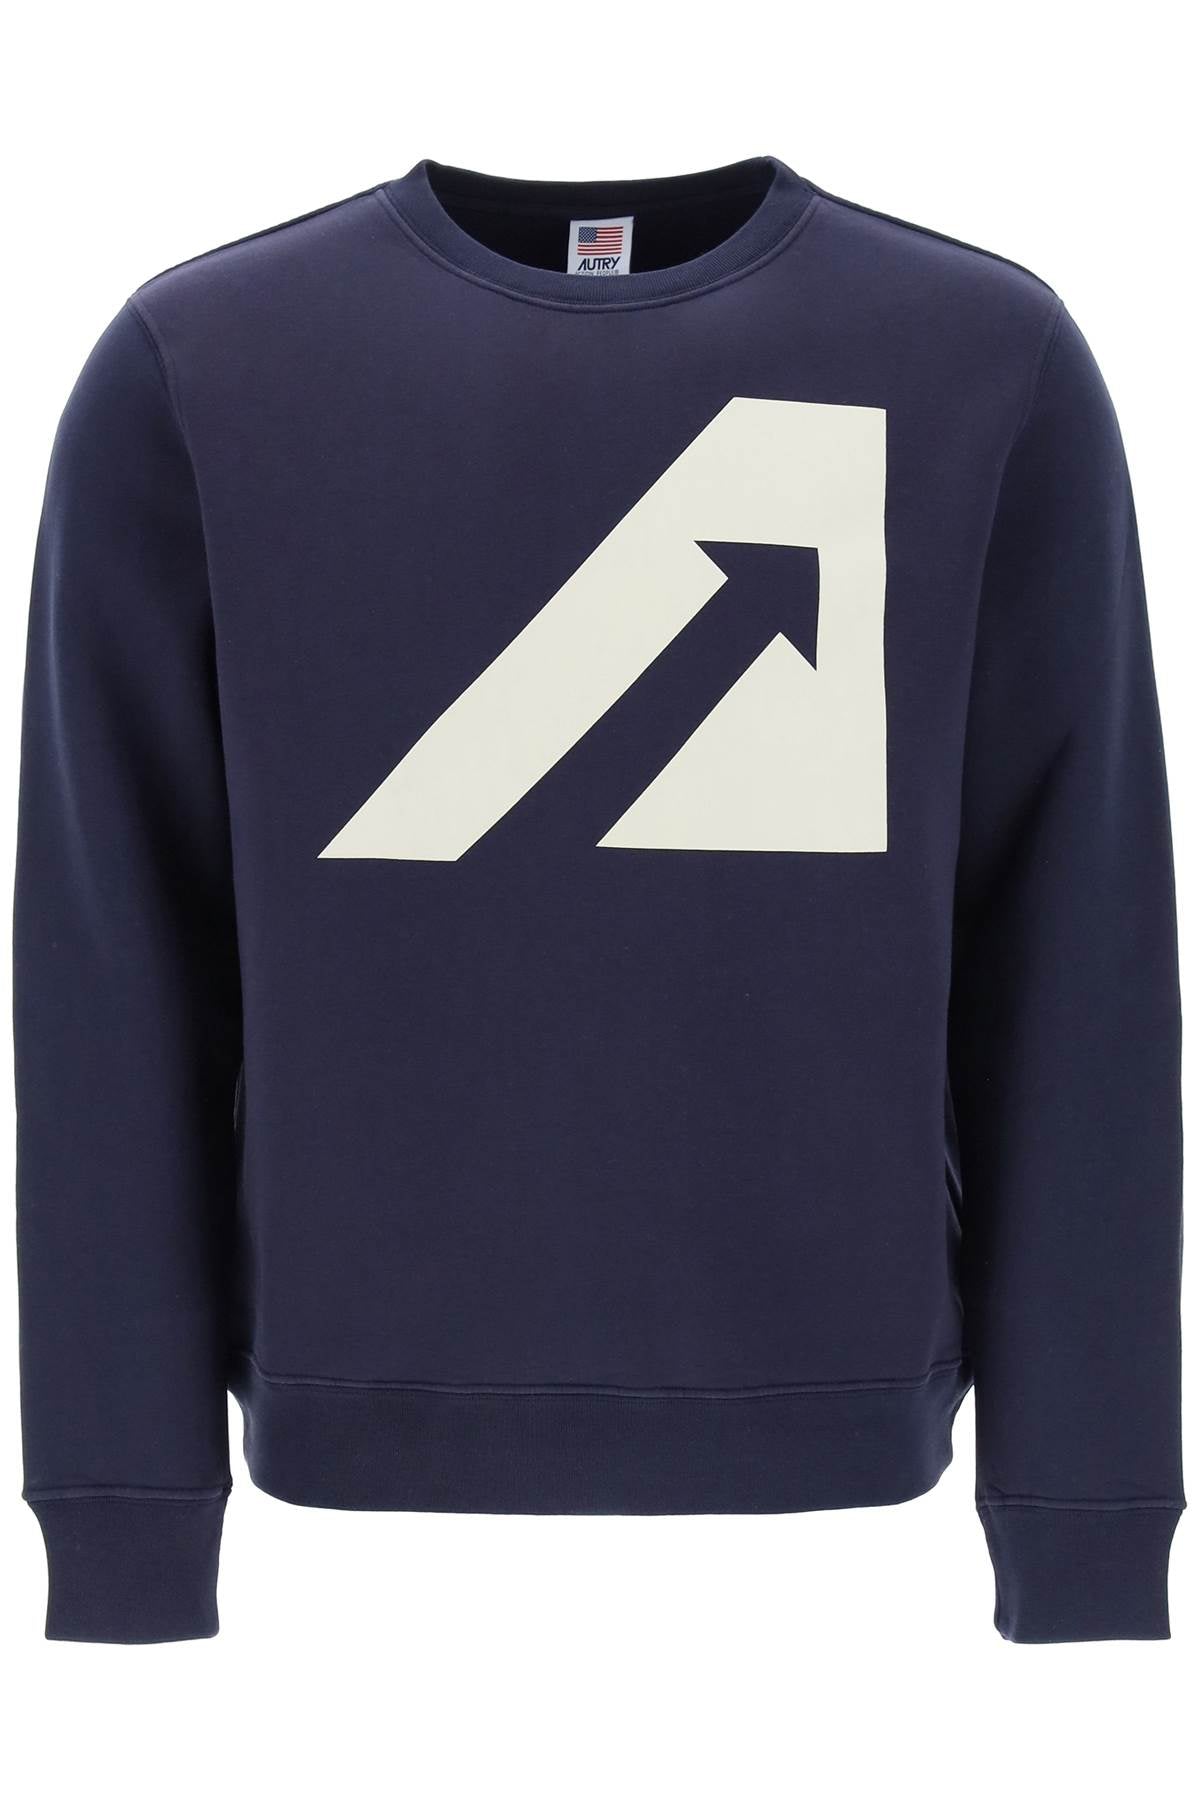 Autry crew-neck sweatshirt with logo print-Autry-Urbanheer